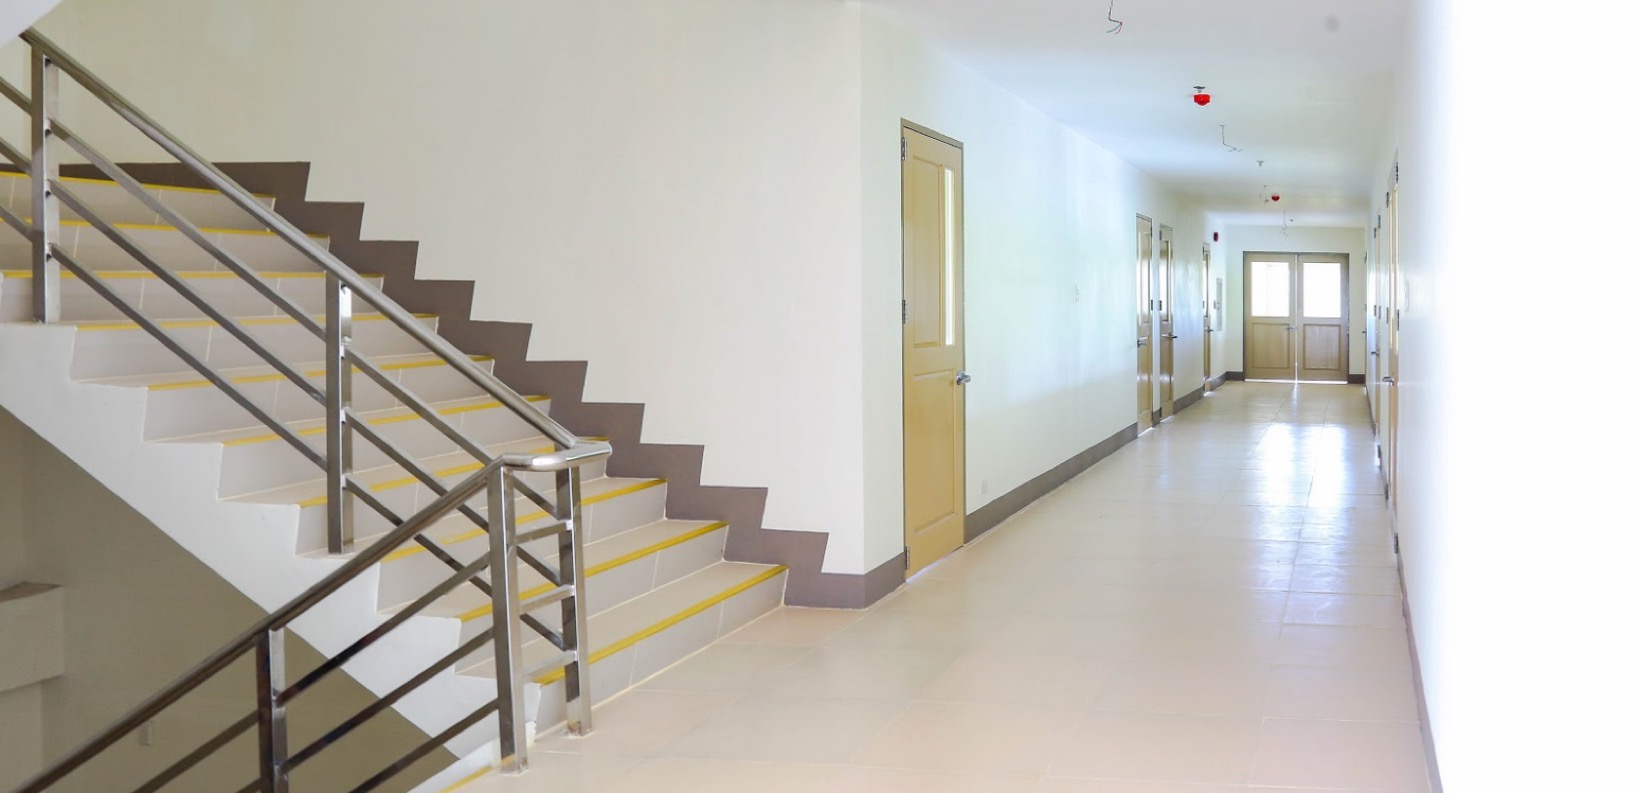 Second-floor hallway of the VSU Innovation Center